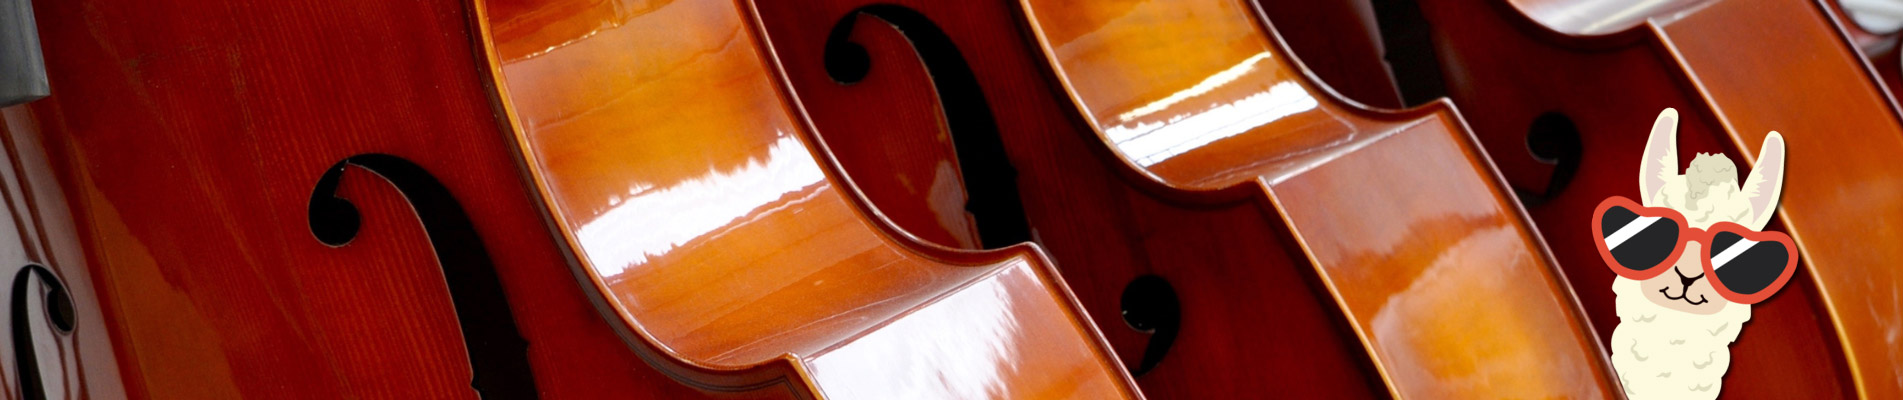 Changement des cordes violoncelle